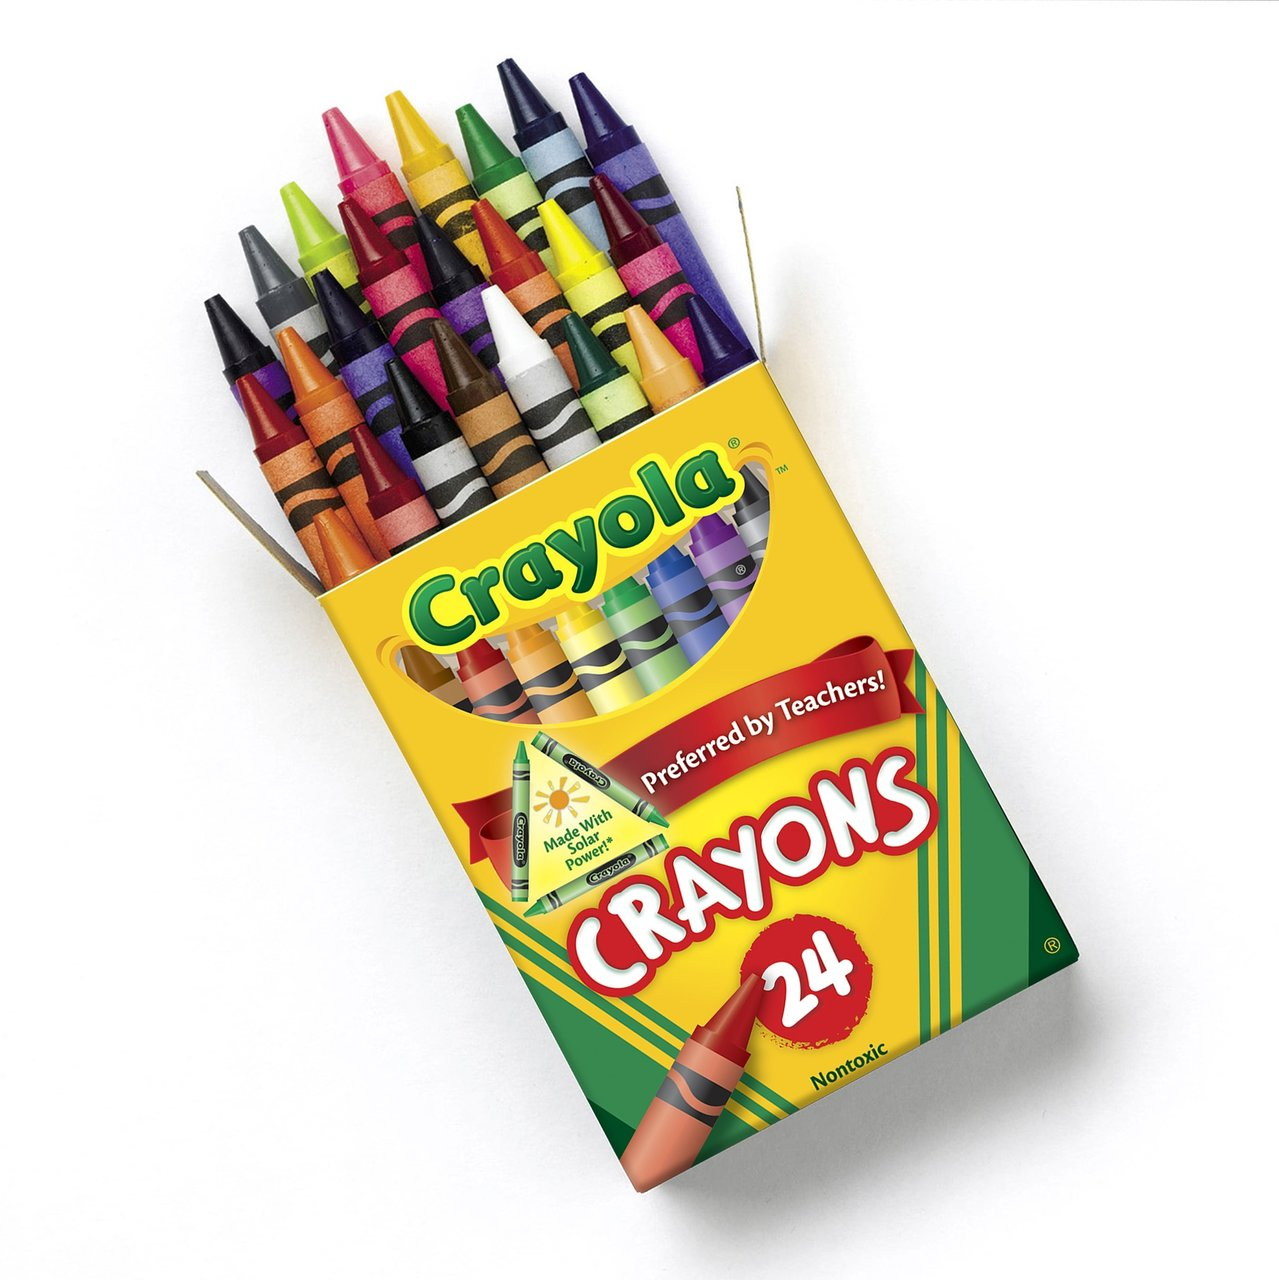 FREE 24 ct. Box of Crayola Crayons at Office Depot & OfficeMax